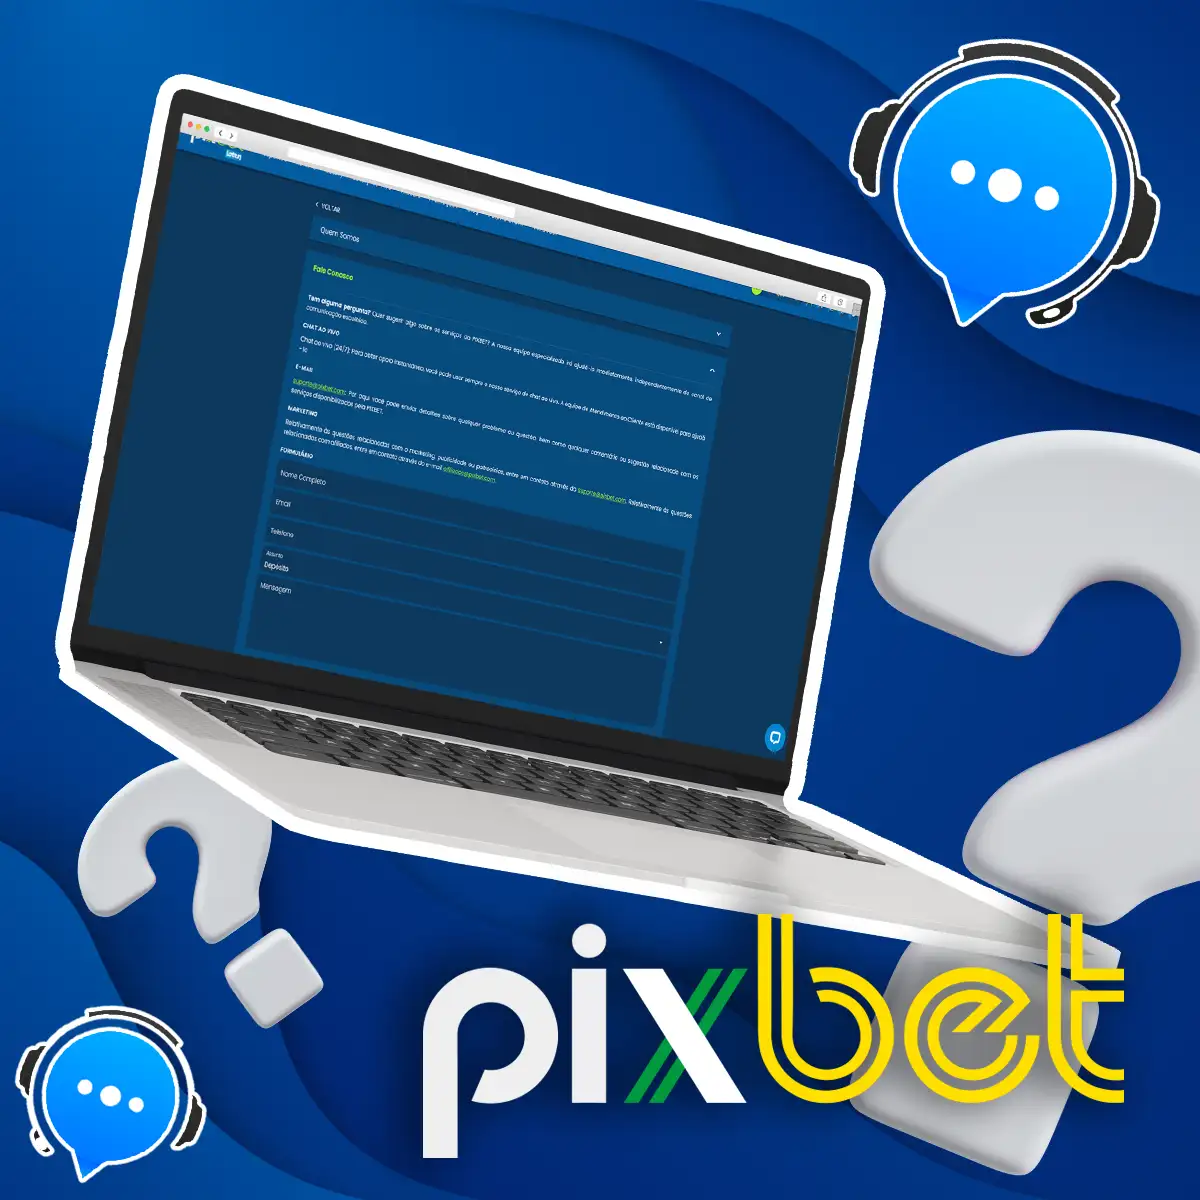 Formas de entrar em contato com a equipe de suporte da Pixbet.